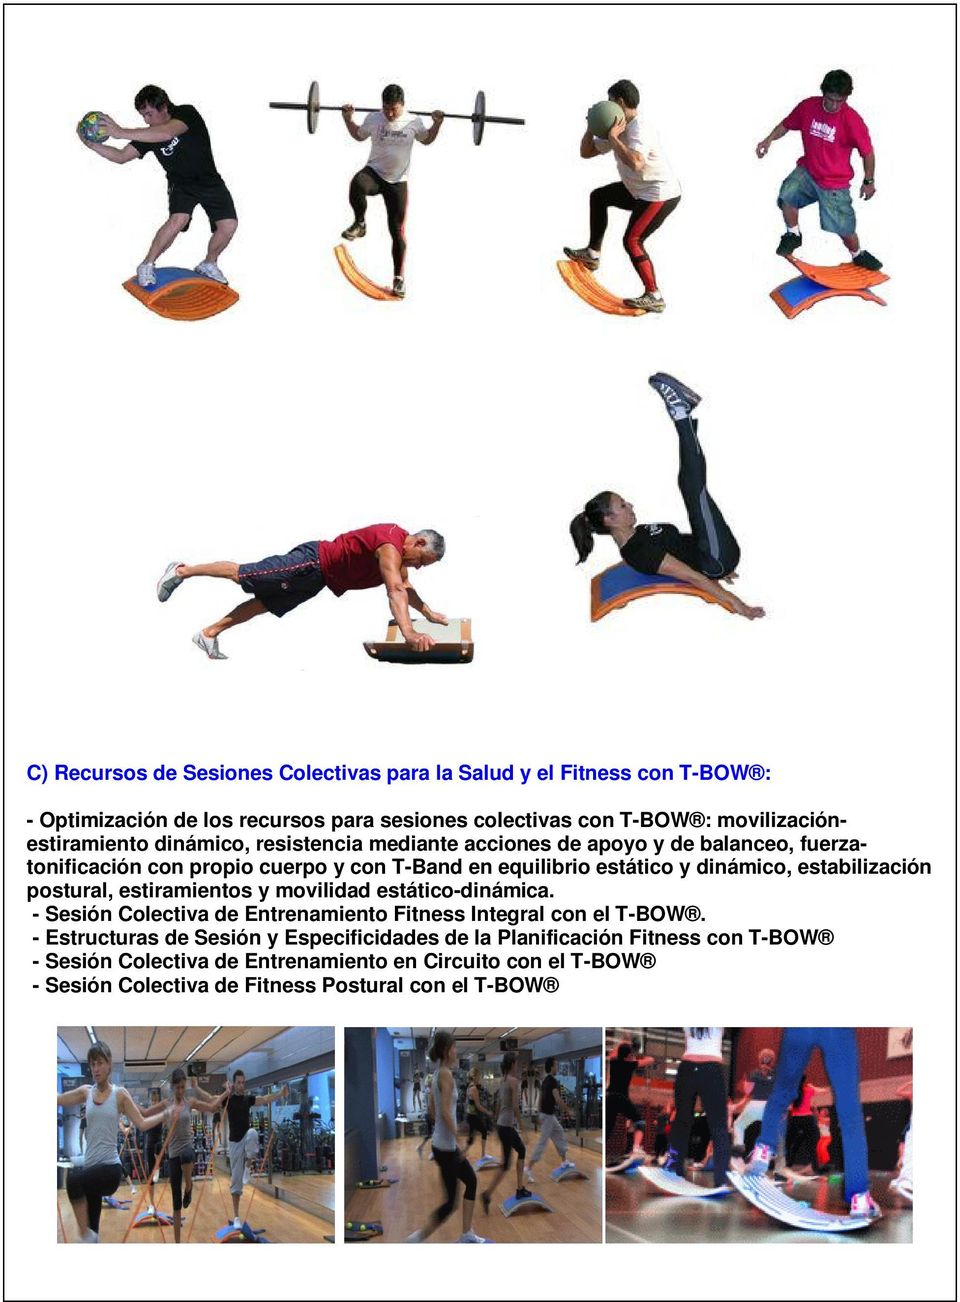 y dinámico, estabilización postural, estiramientos y movilidad estático-dinámica. - Sesión Colectiva de Entrenamiento Fitness Integral con el T-BOW.